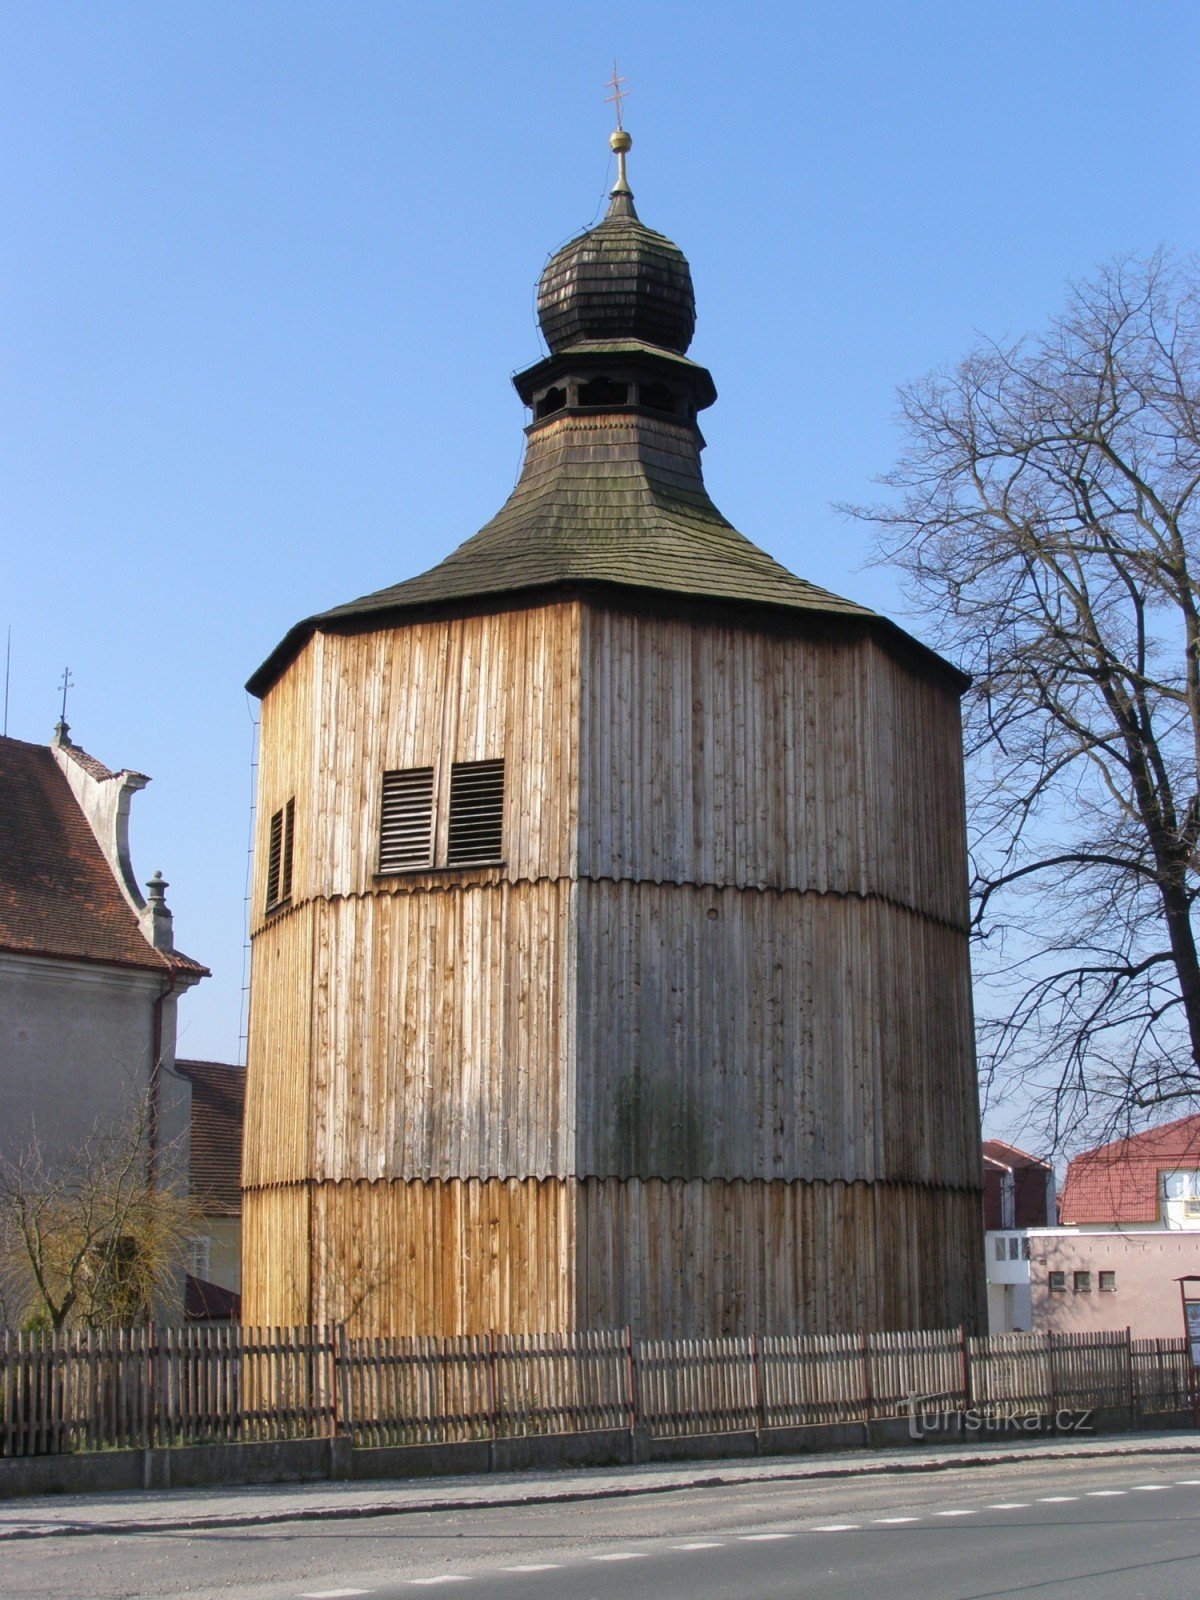 Sezemice - tháp chuông bằng gỗ